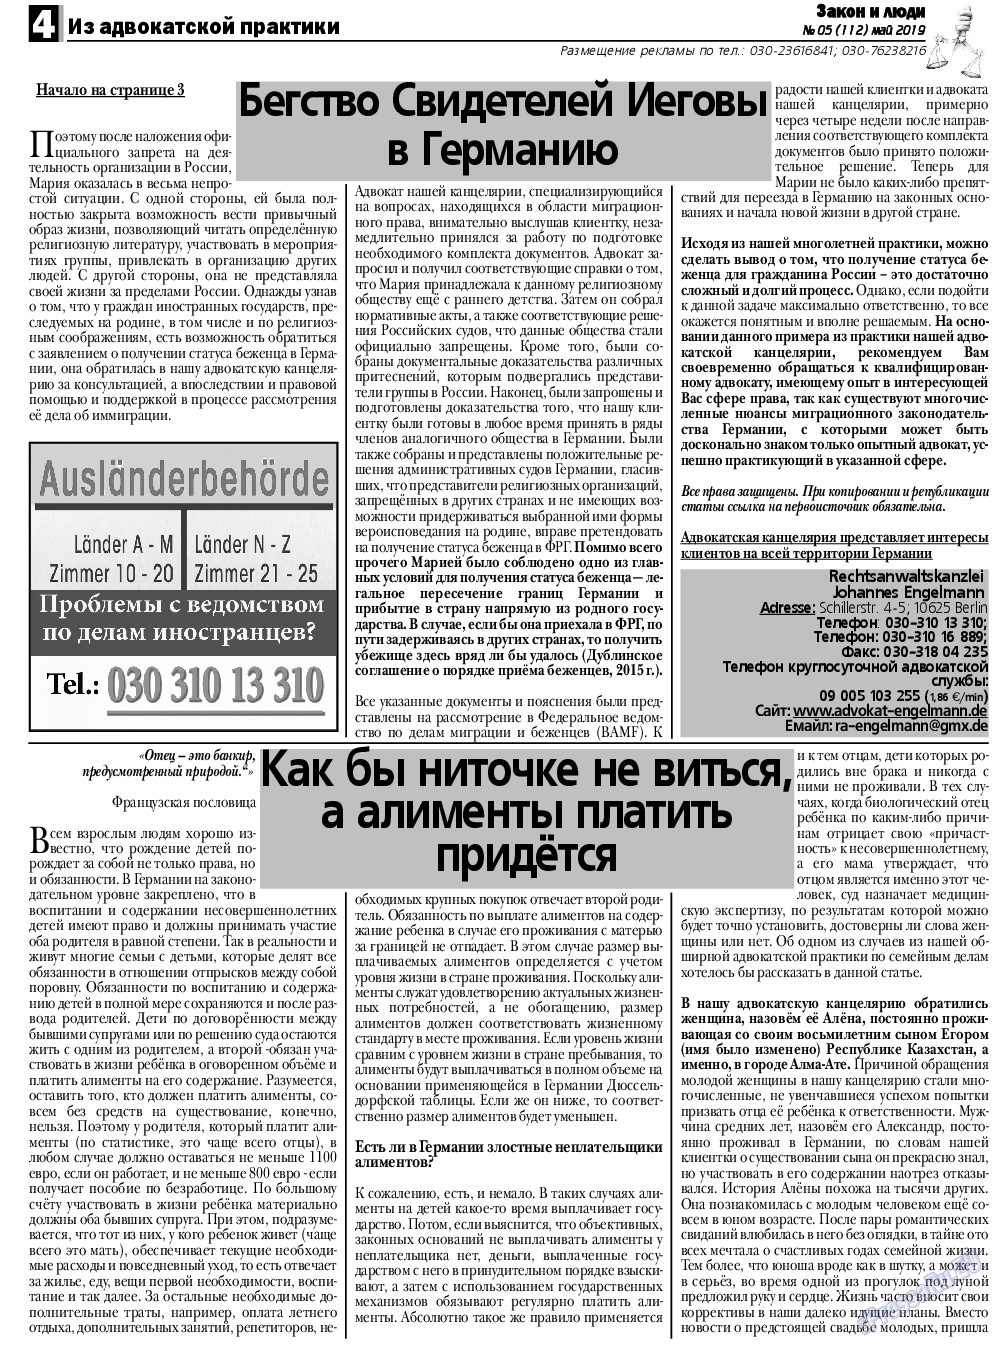 Закон и люди, газета. 2019 №5 стр.4